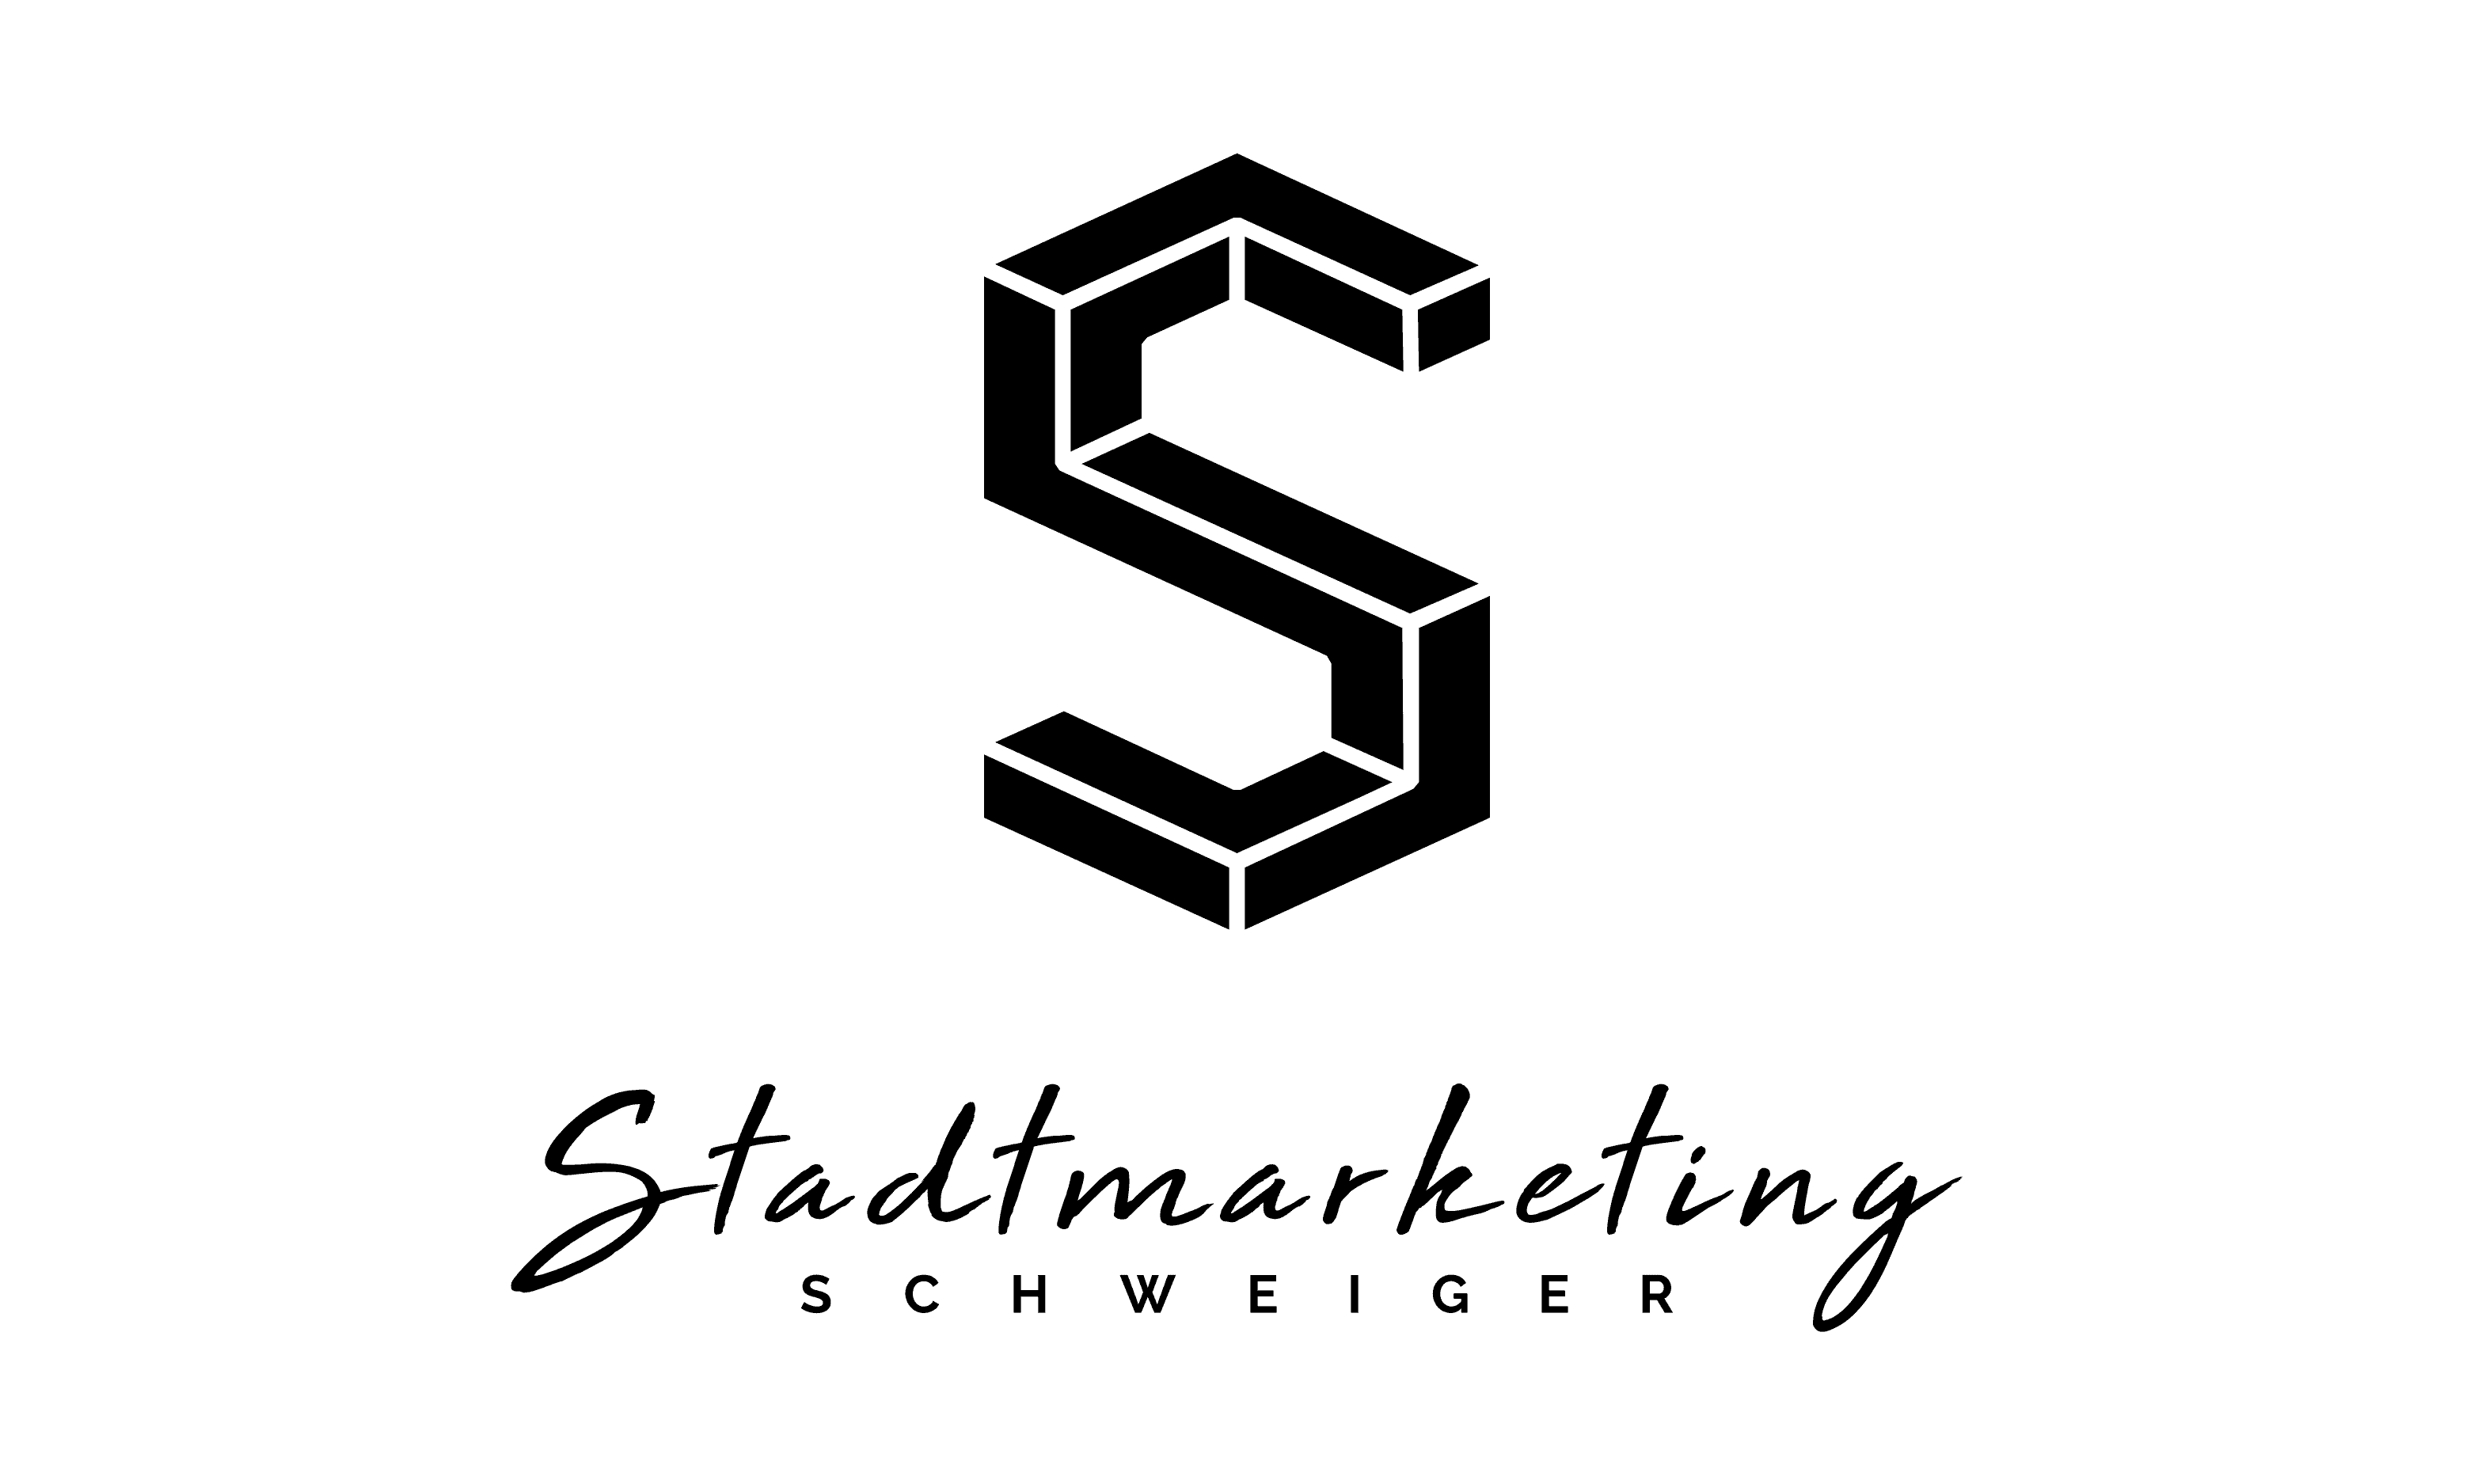 Schweiger’s Stadtmarketing GmbH